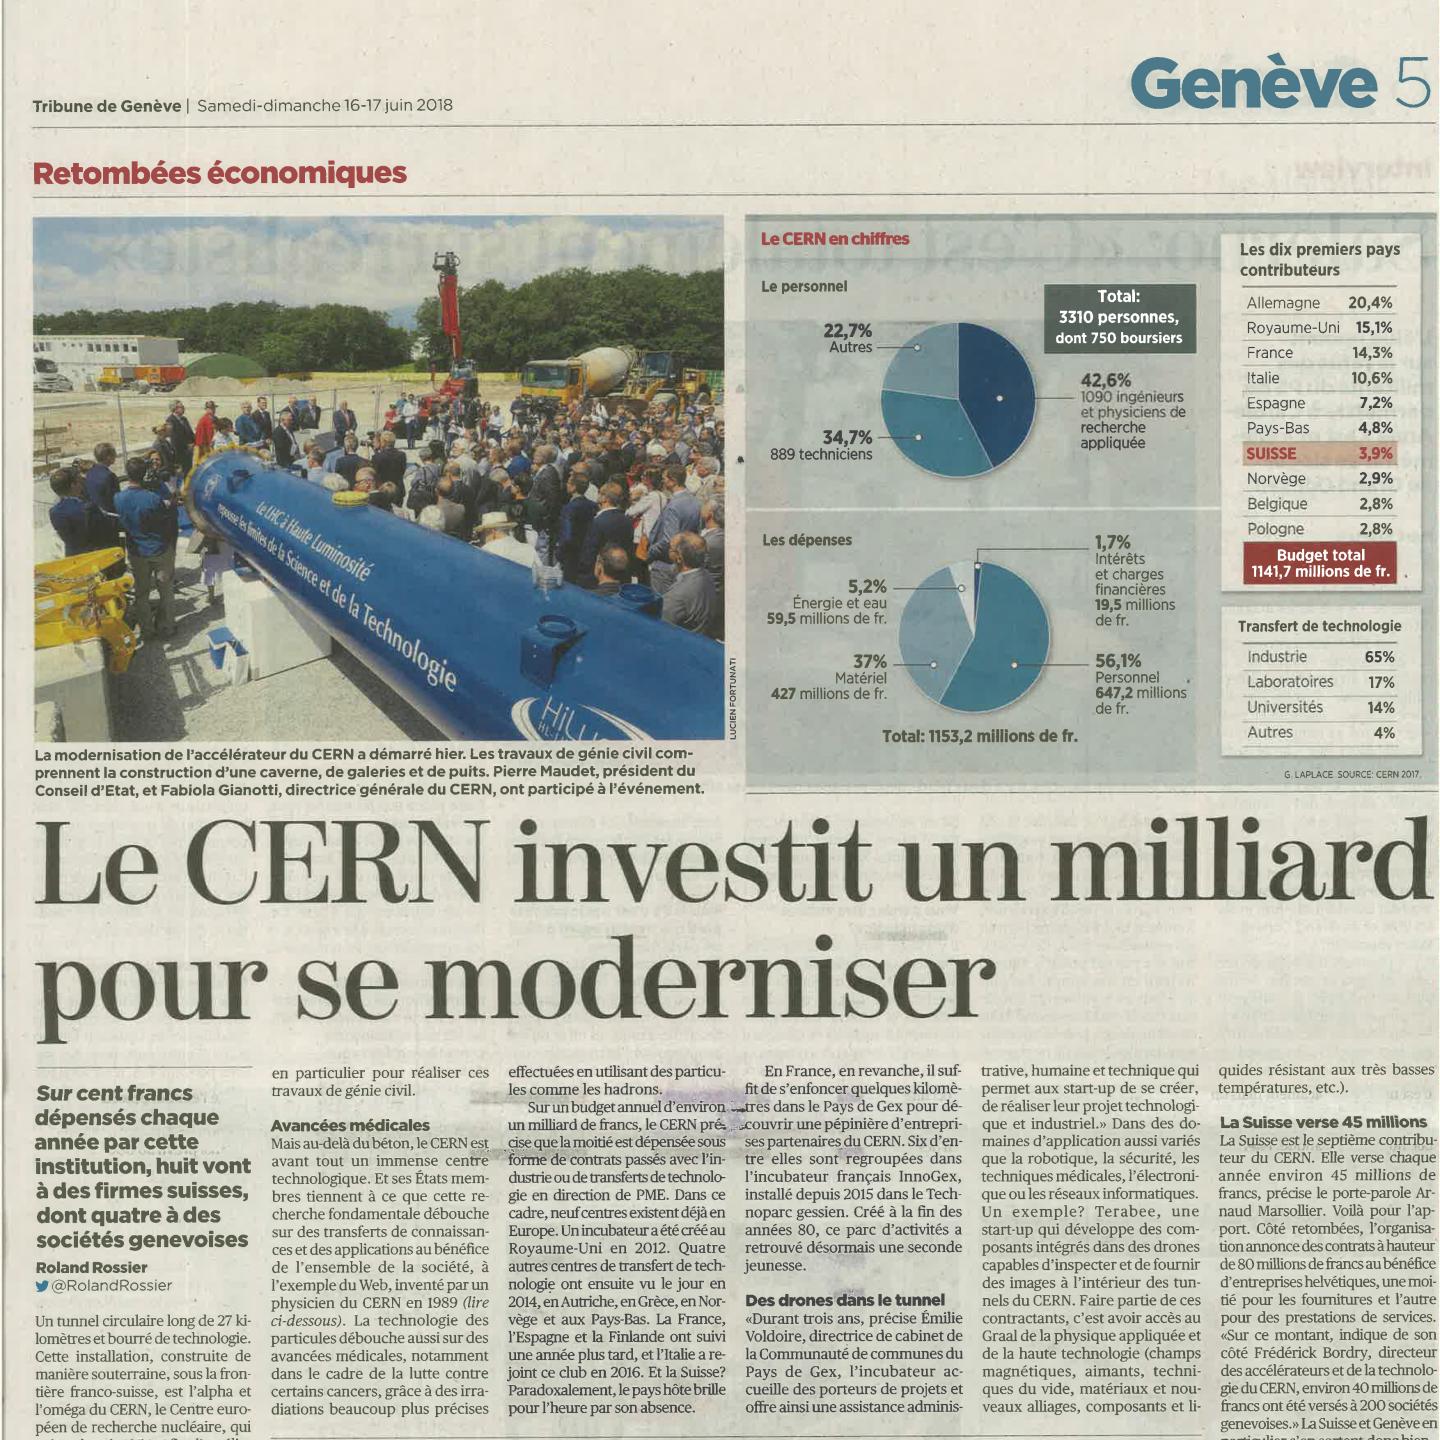 CERN invests one billion for modernisation |  Tribune De Genève